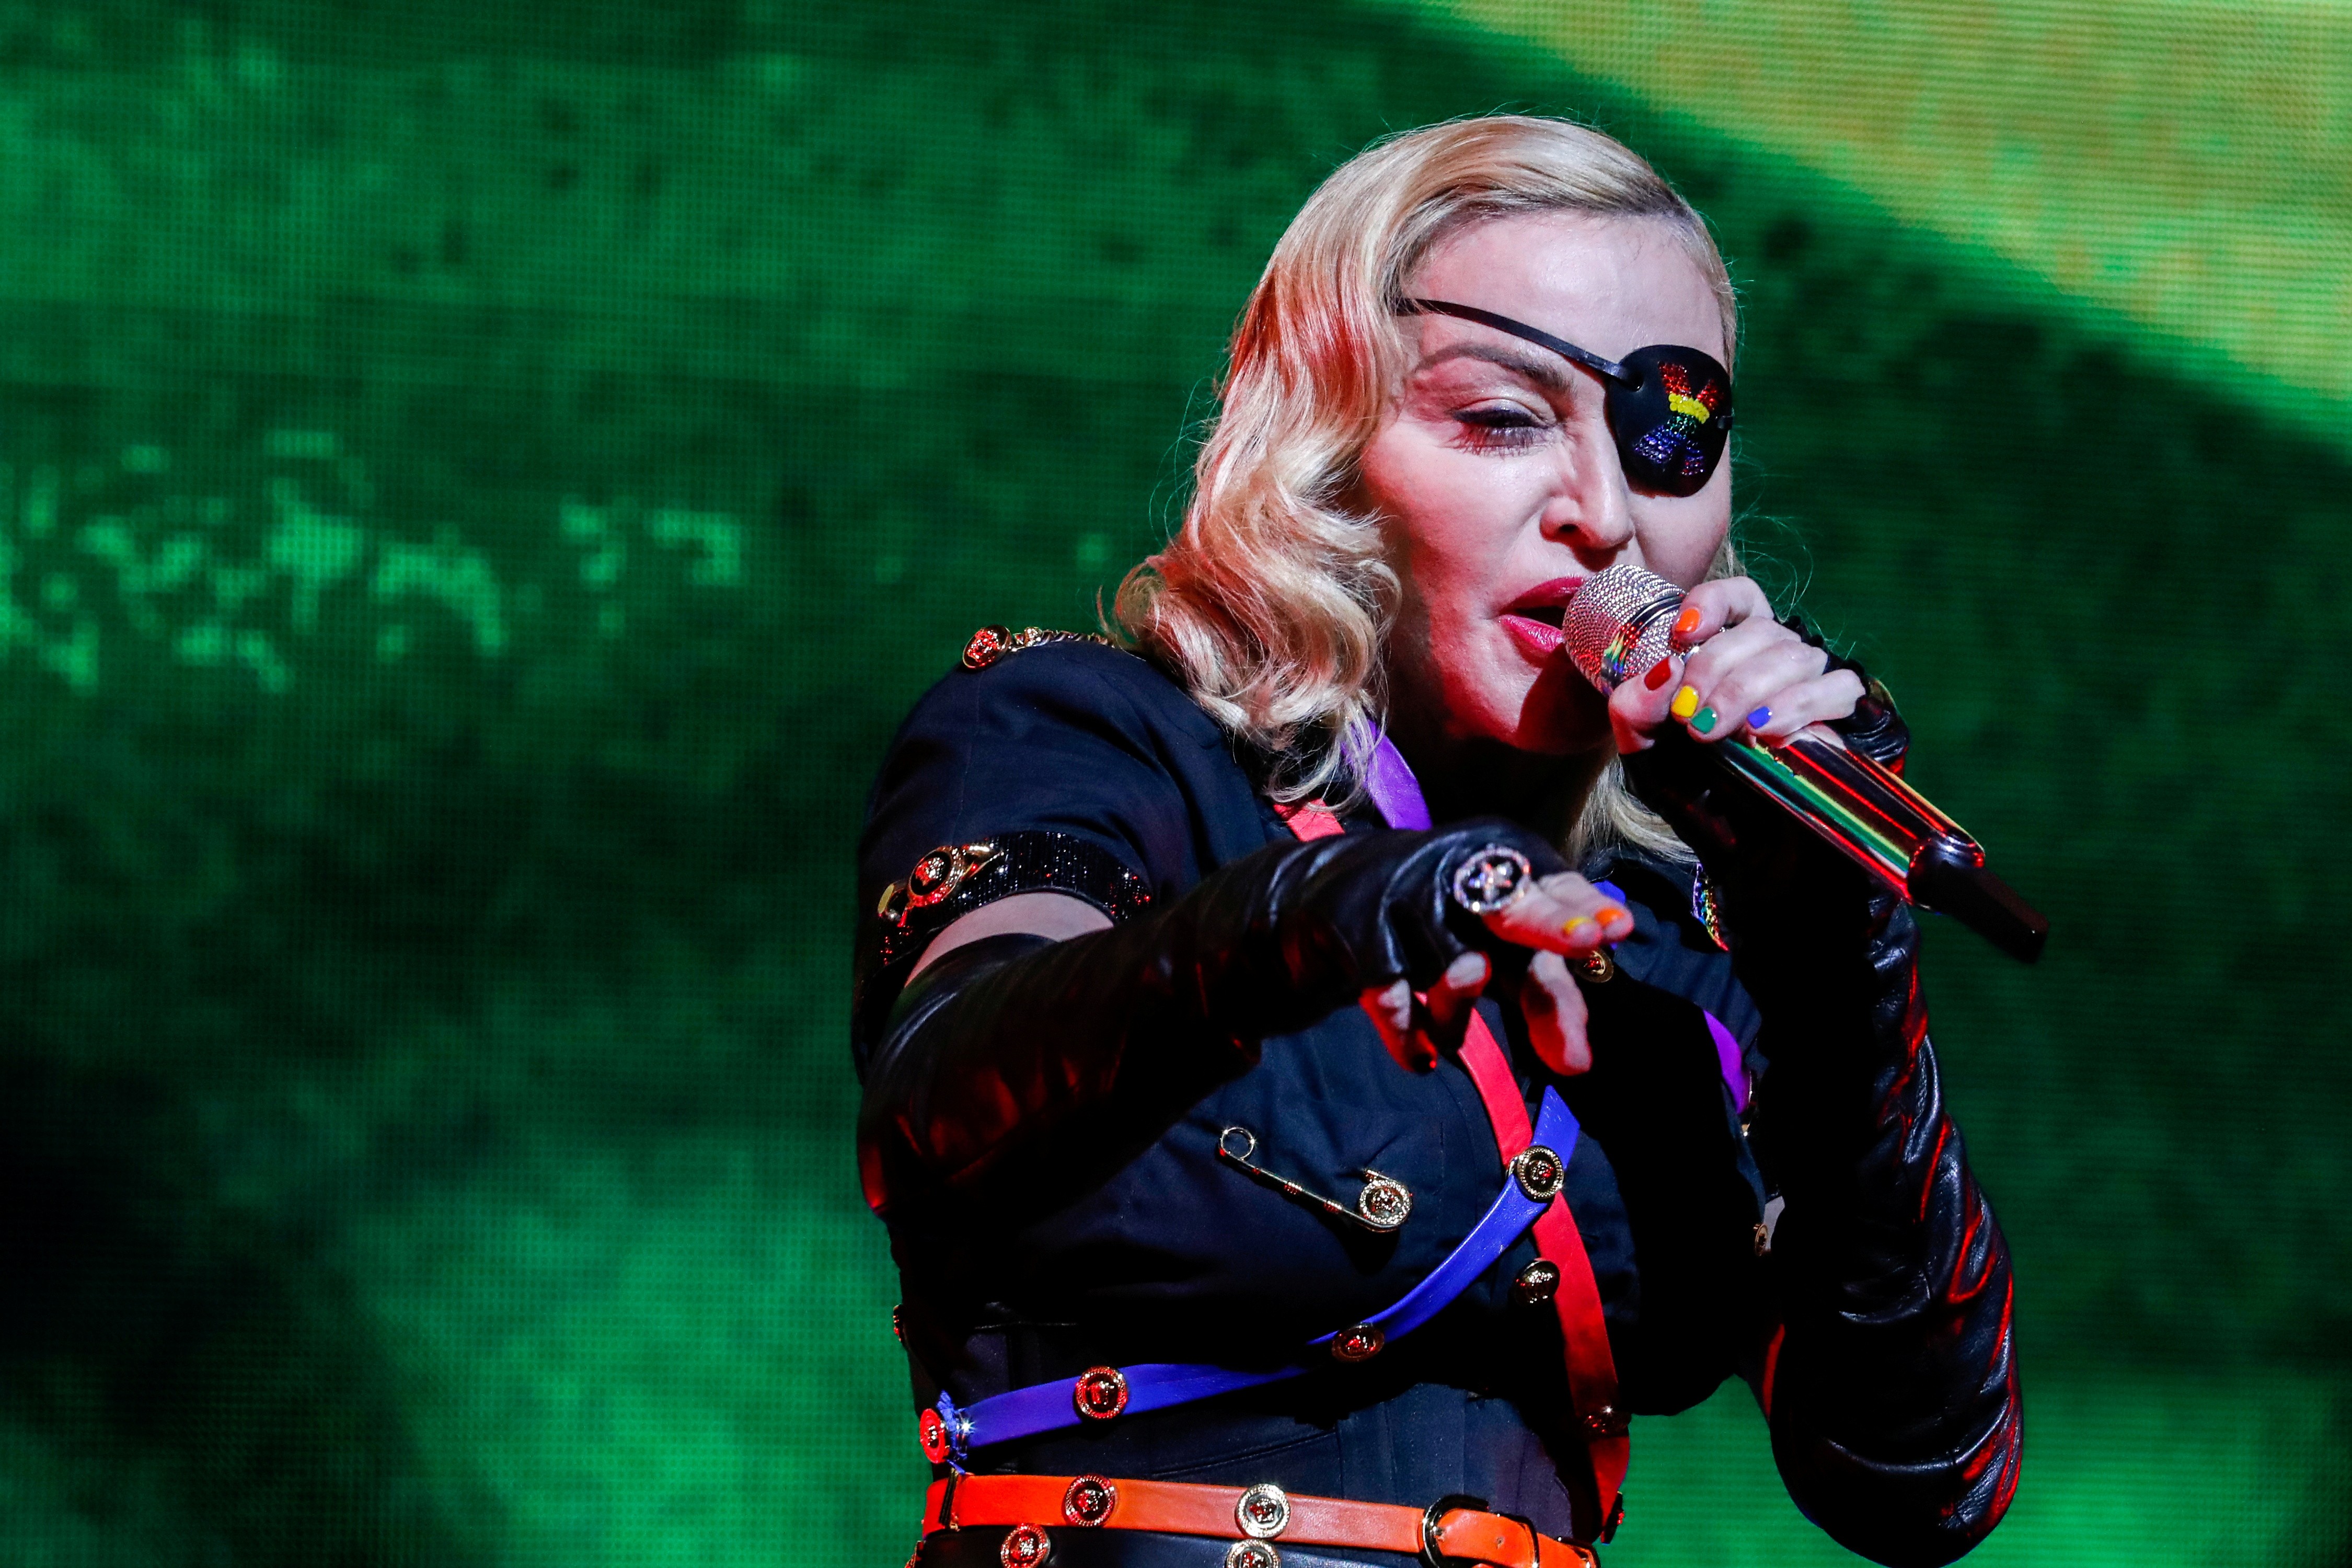 Madonna tem fortuna avaliada em US$ 580 milhões e deve somar mais US$ 100 milhões com turnê atual